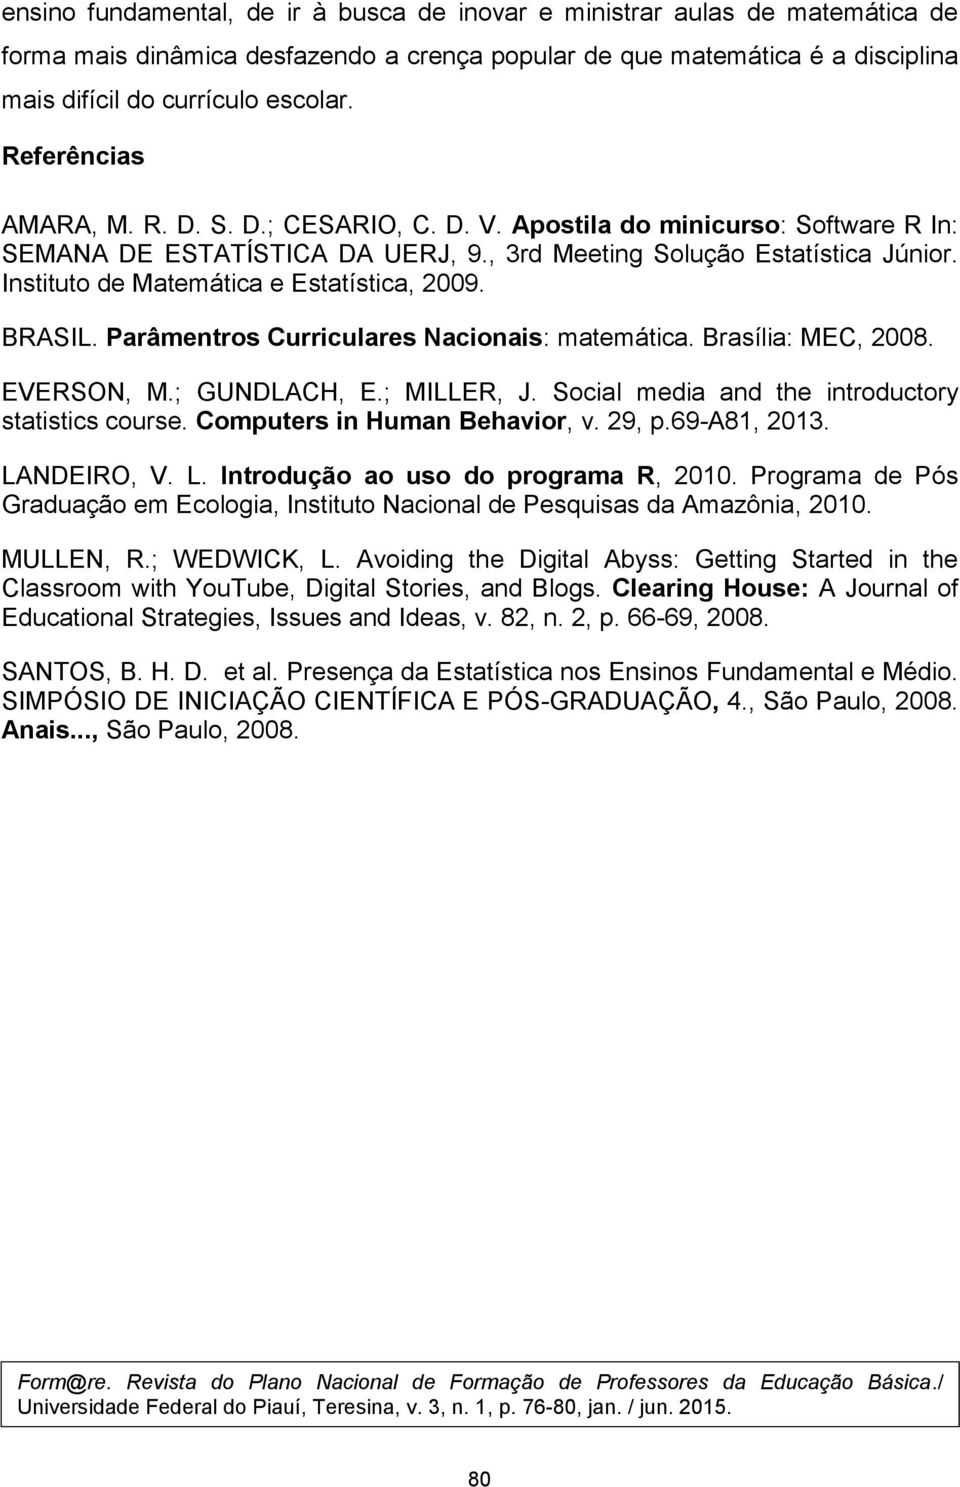 Instituto de Matemática e Estatística, 2009. BRASIL. Parâmentros Curriculares Nacionais: matemática. Brasília: MEC, 2008. EVERSON, M.; GUNDLACH, E.; MILLER, J.